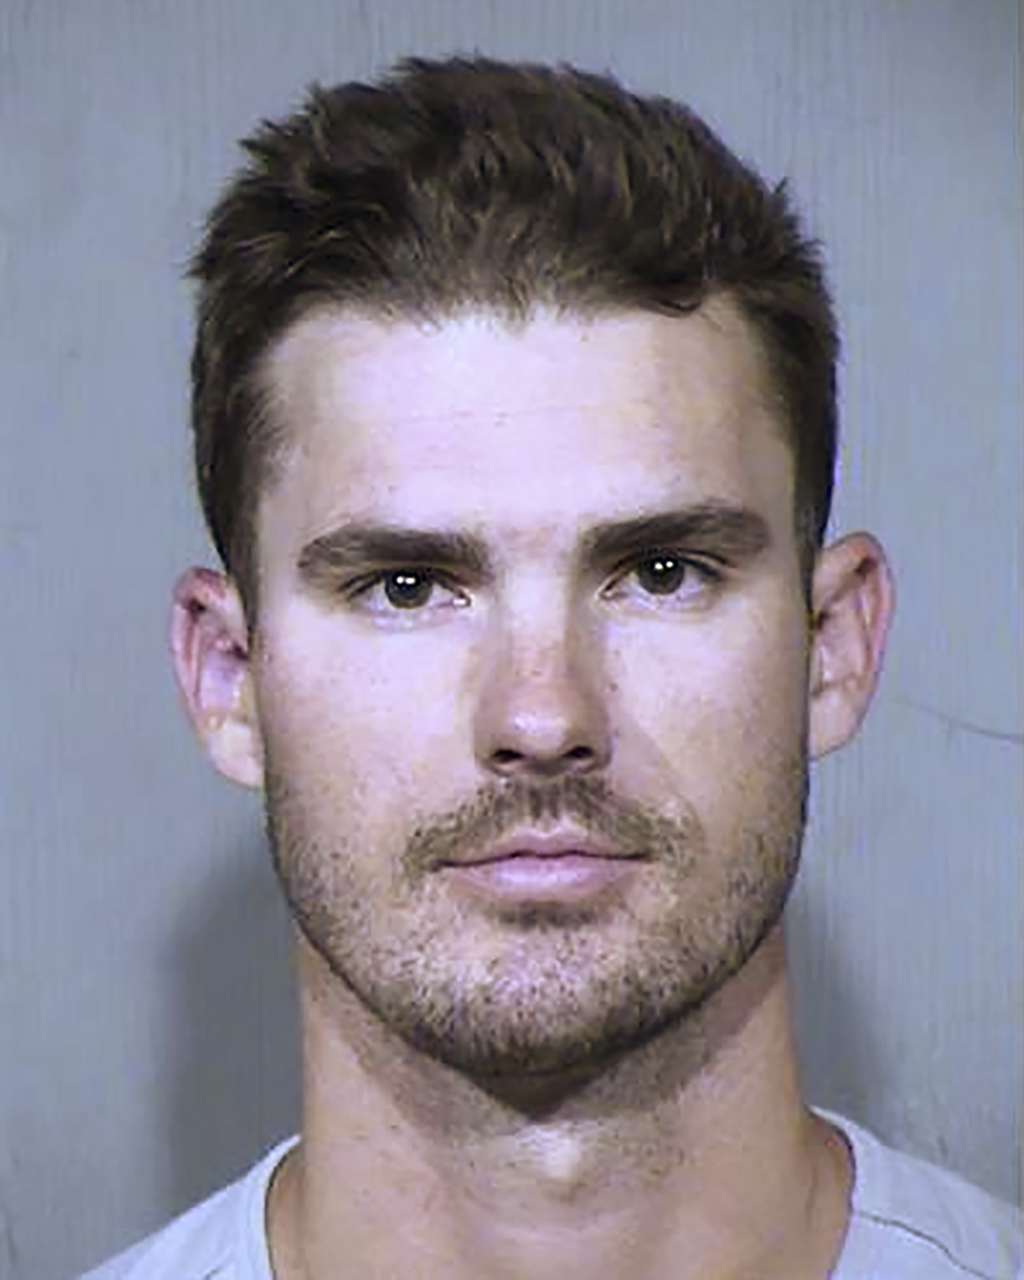 Nix fue arrestado después de ingresar arrastrándose por la puerta de un perro en una casa en Peoria, suburbio de Phoenix, en Arizona. (AP) 